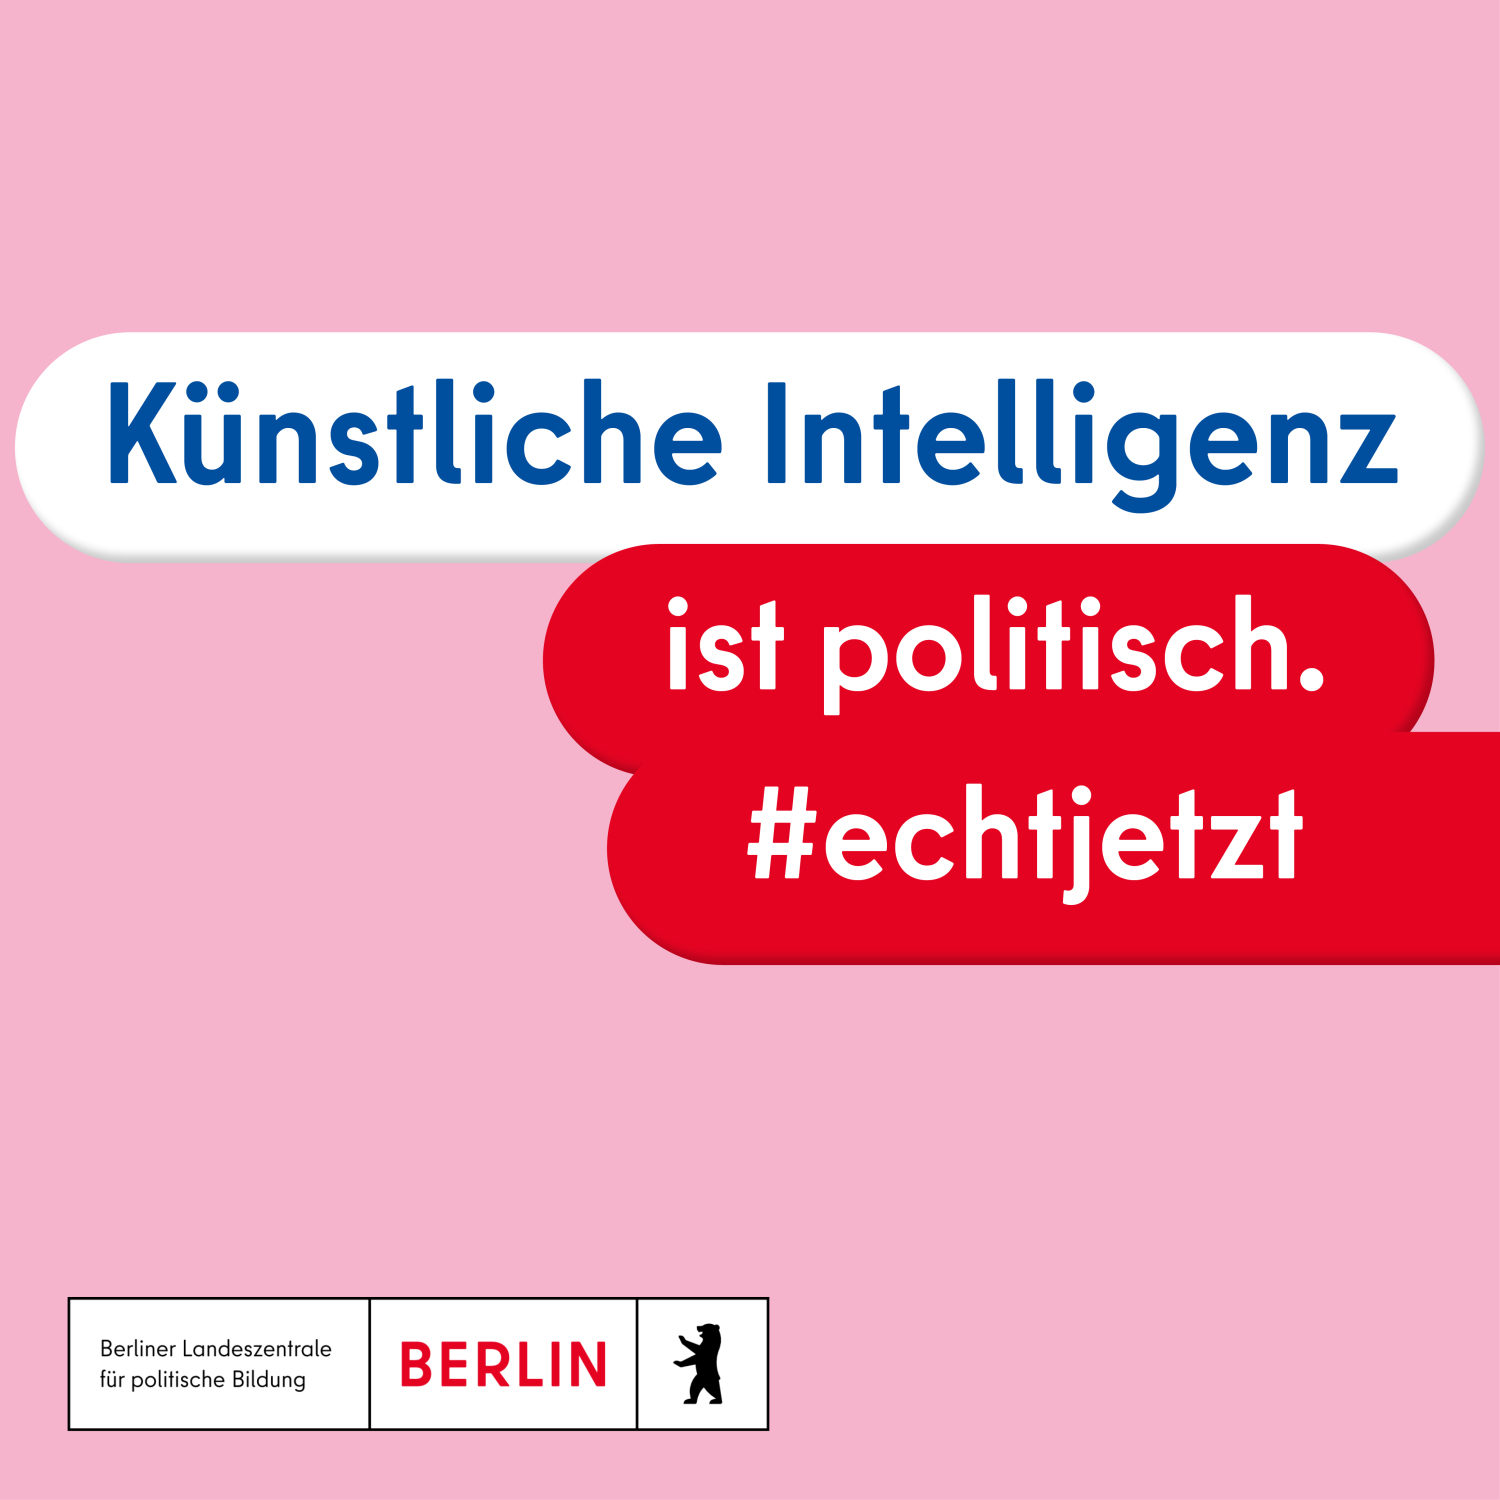 Text: "Künstliche Intelligenz ist politisch. #echtjetzt"